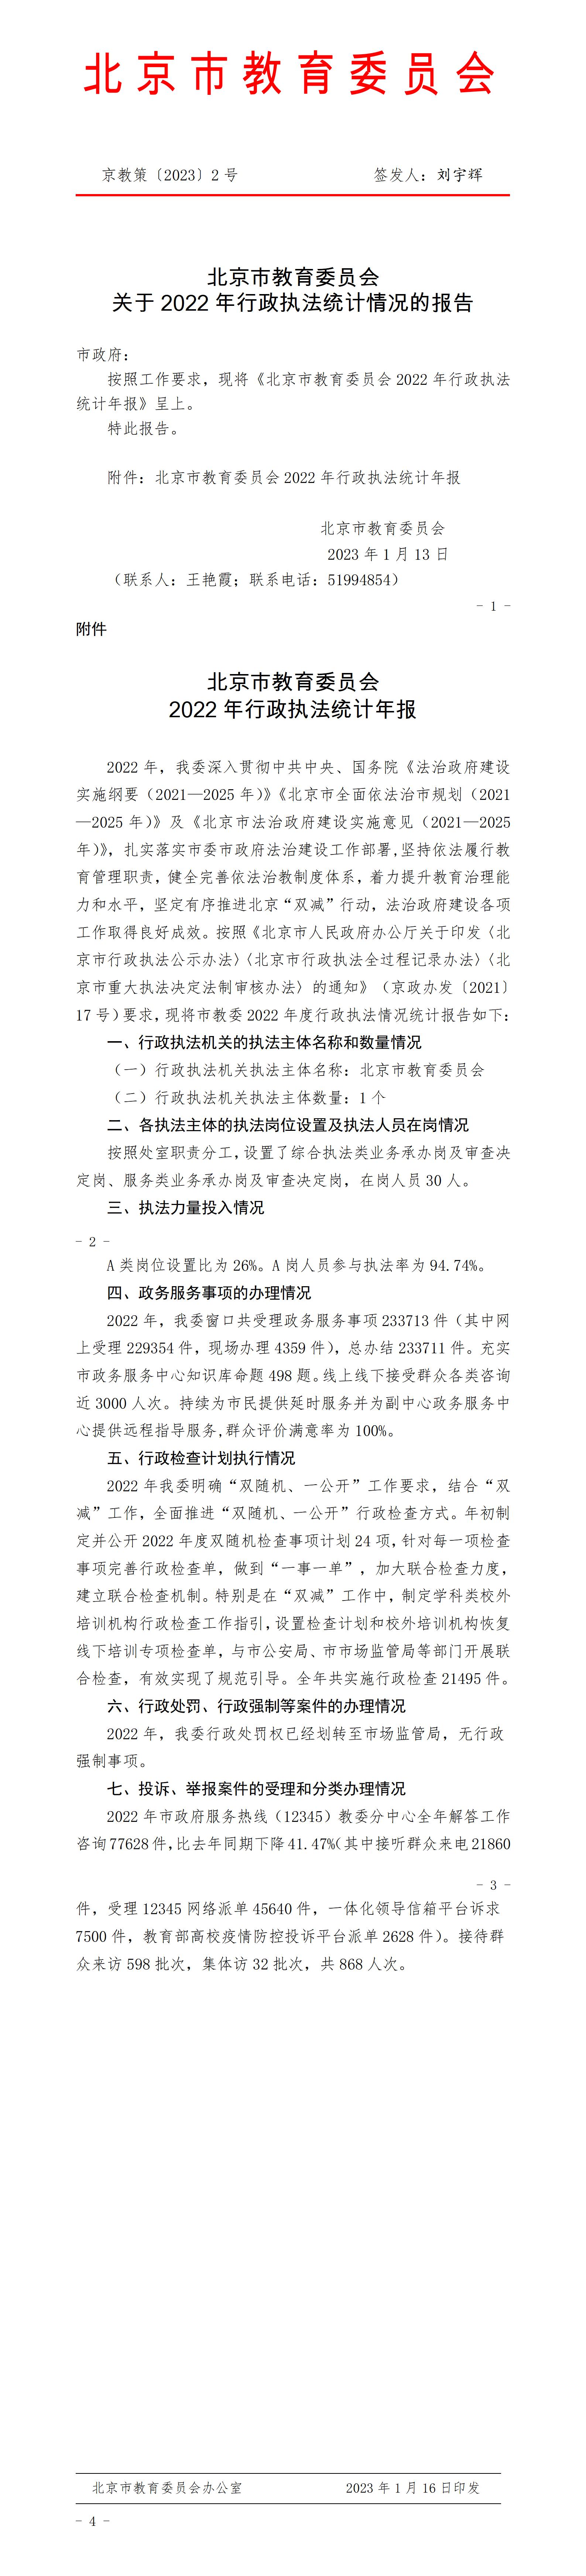 北京市教育委员会2022年行政执法统计年报